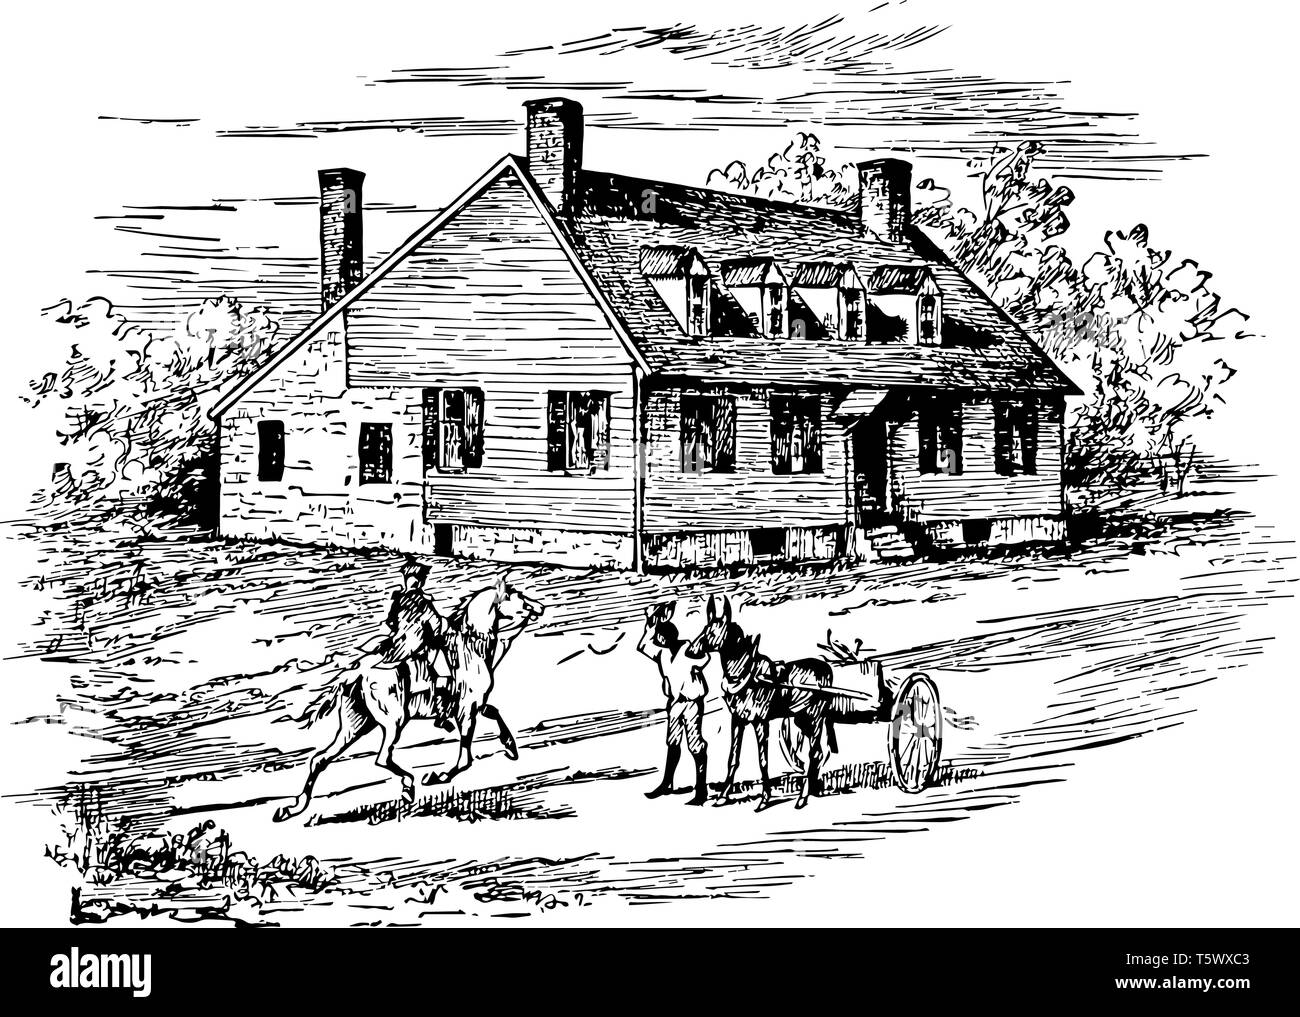 Ferry Farm aussi connu sous le nom de George Washington Boyhood Home Site ou Ferry Farm Site établit à Fredericksburg George Washington a passé beaucoup de chil Illustration de Vecteur